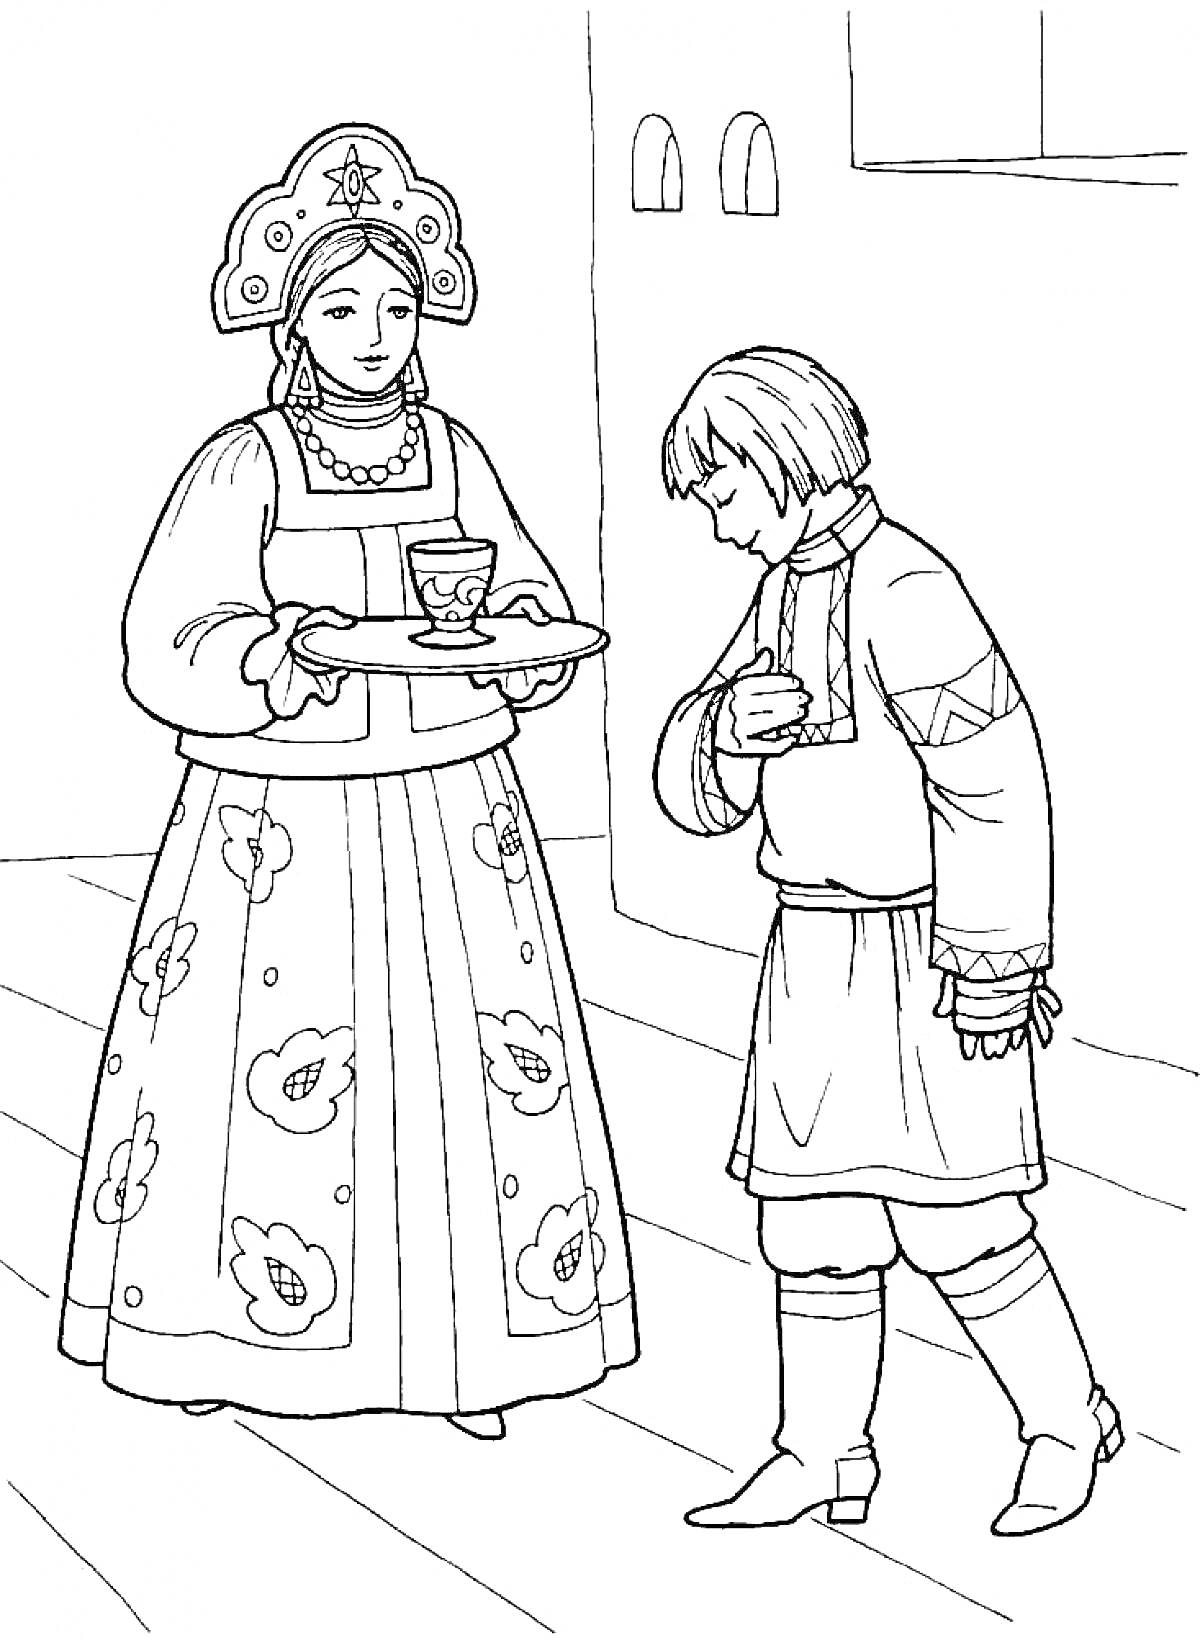 Женщина в традиционной русской одежде с подносом, на котором стоит чашка, и юноша